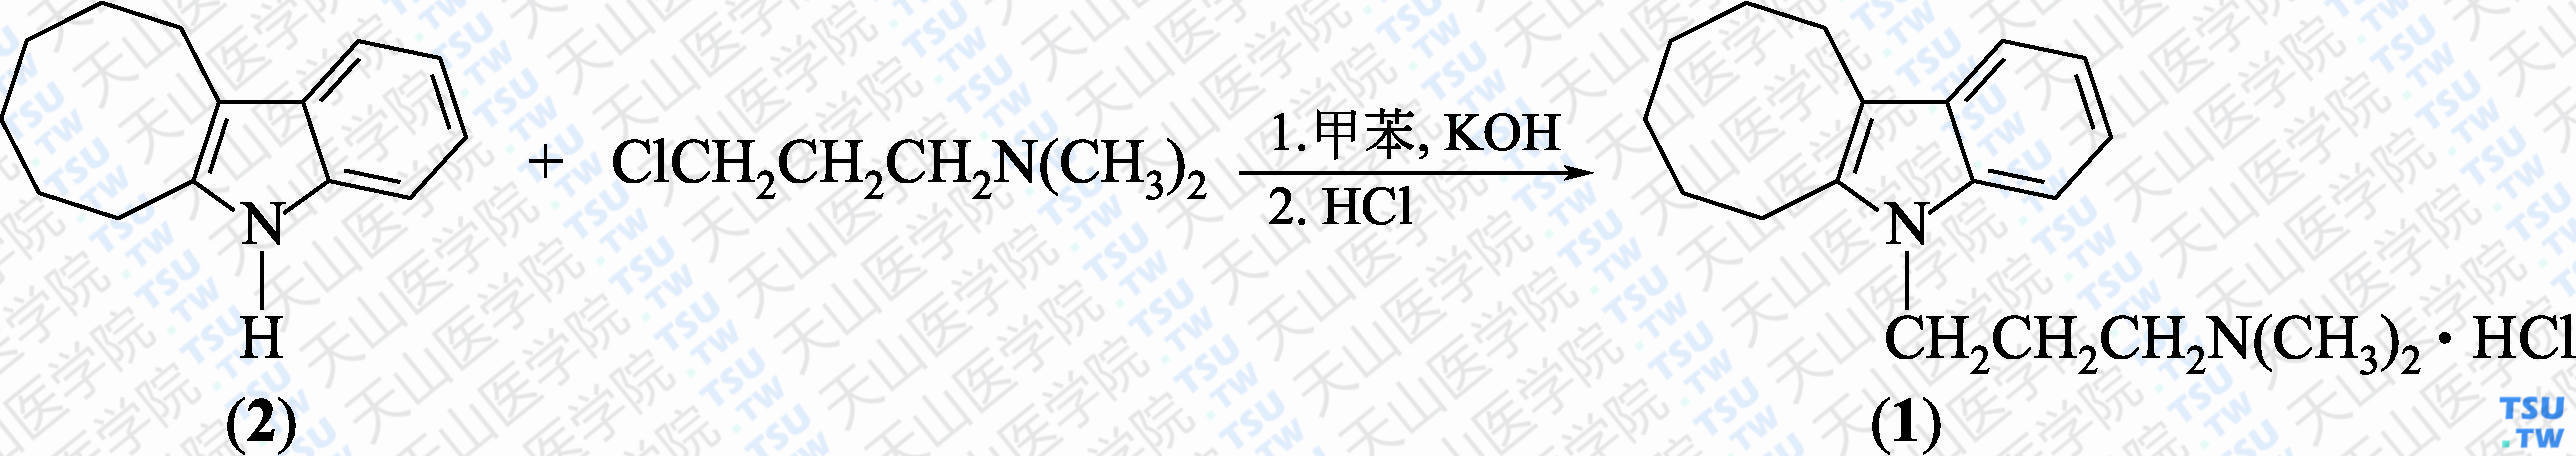 盐酸伊普吲哚（分子式：C<sub>19</sub>H<sub>28</sub>N<sub>2</sub>·HCl）的合成方法路线及其结构式